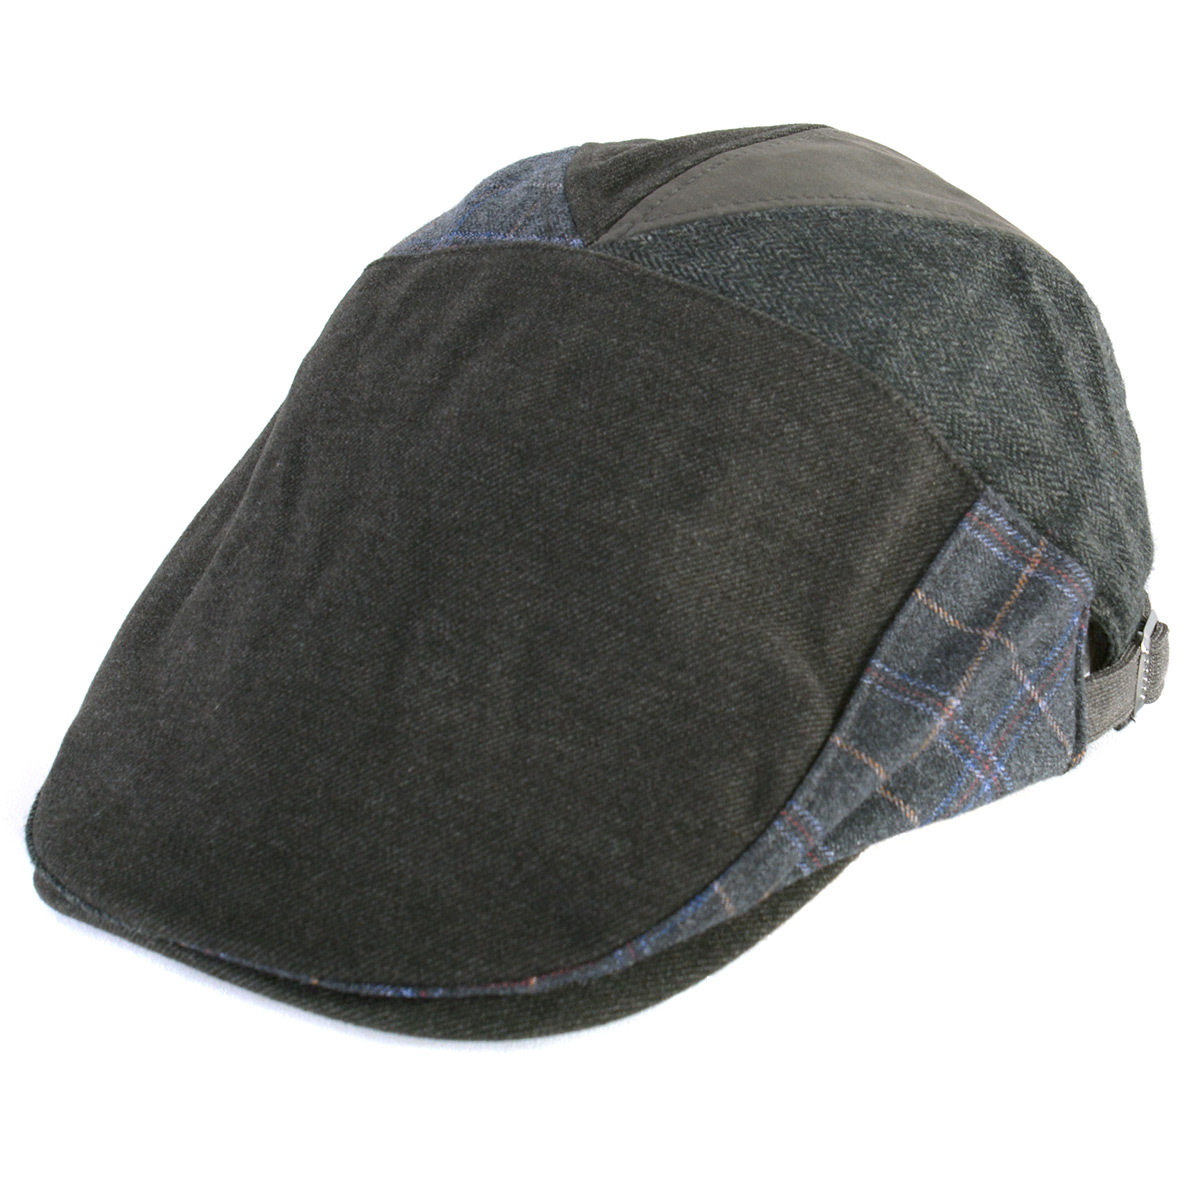 ハンチング帽子 ハンチング帽 メンズ レディース 秋冬 冬用 モナコハンチング | オールド パッチワーク デザイン ハンチング